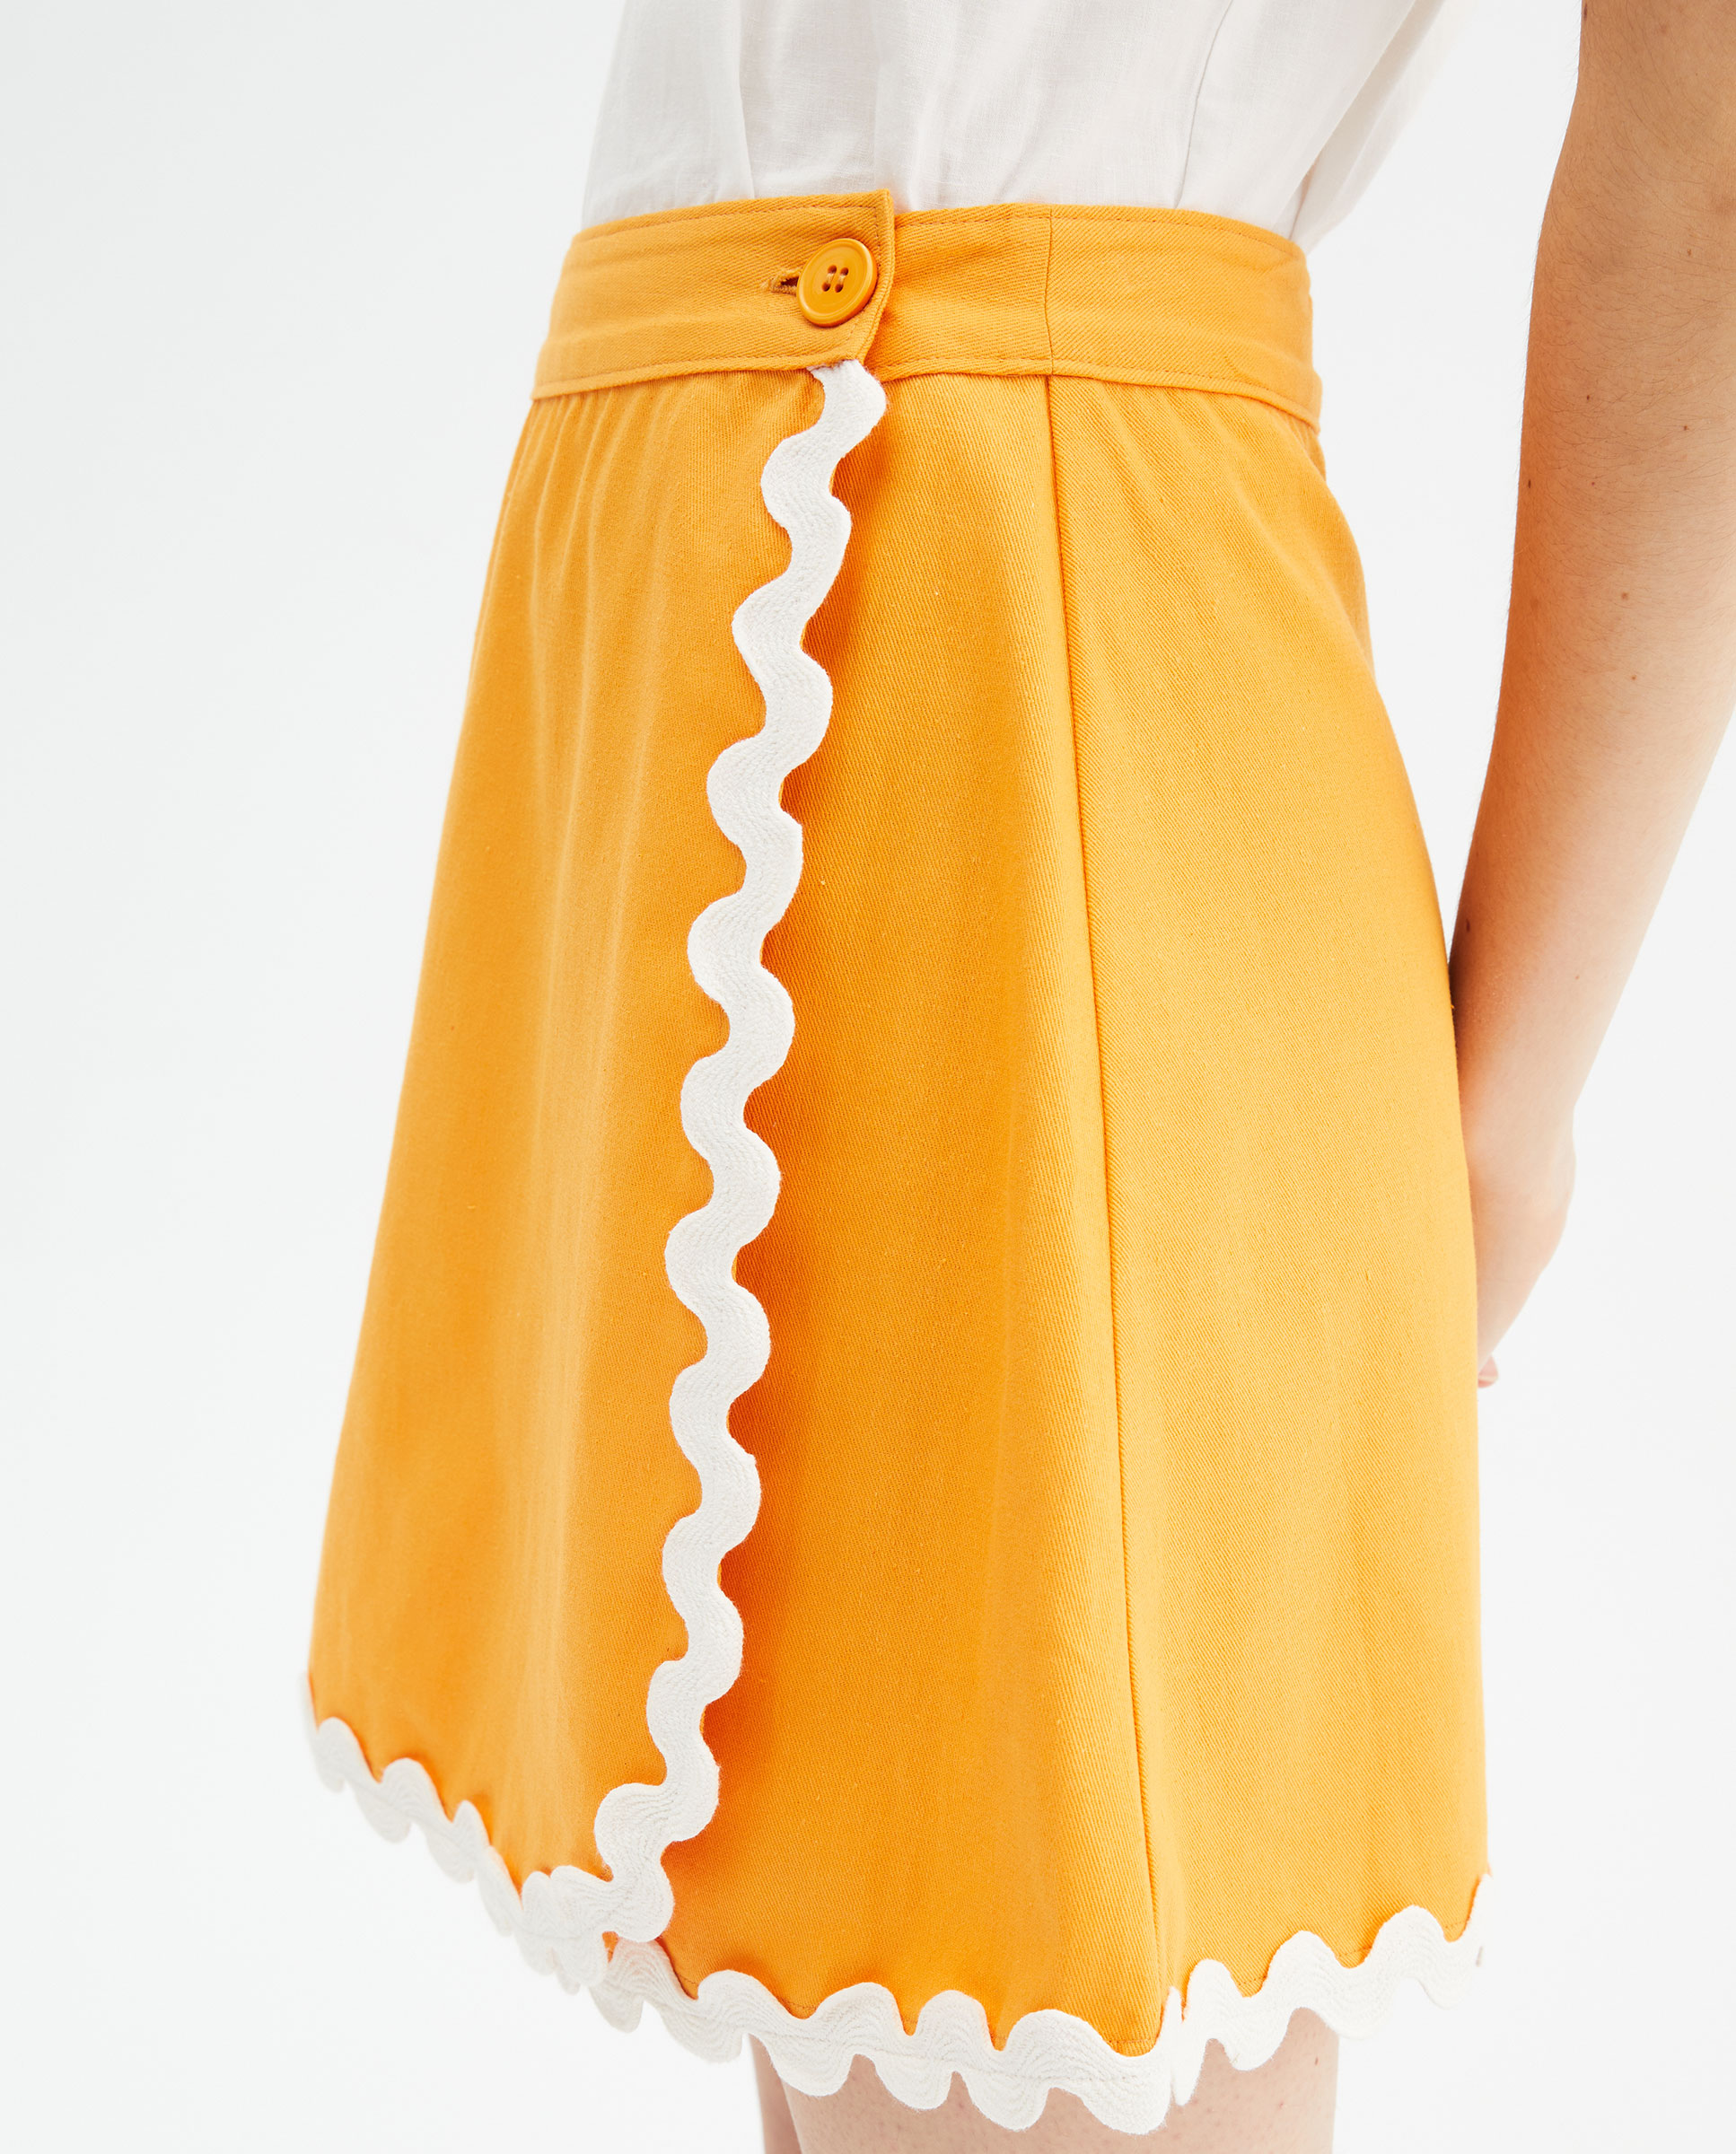 Πορτοκαλί μίνι φούστα με zic zac σχέδιο Compania Fantastica